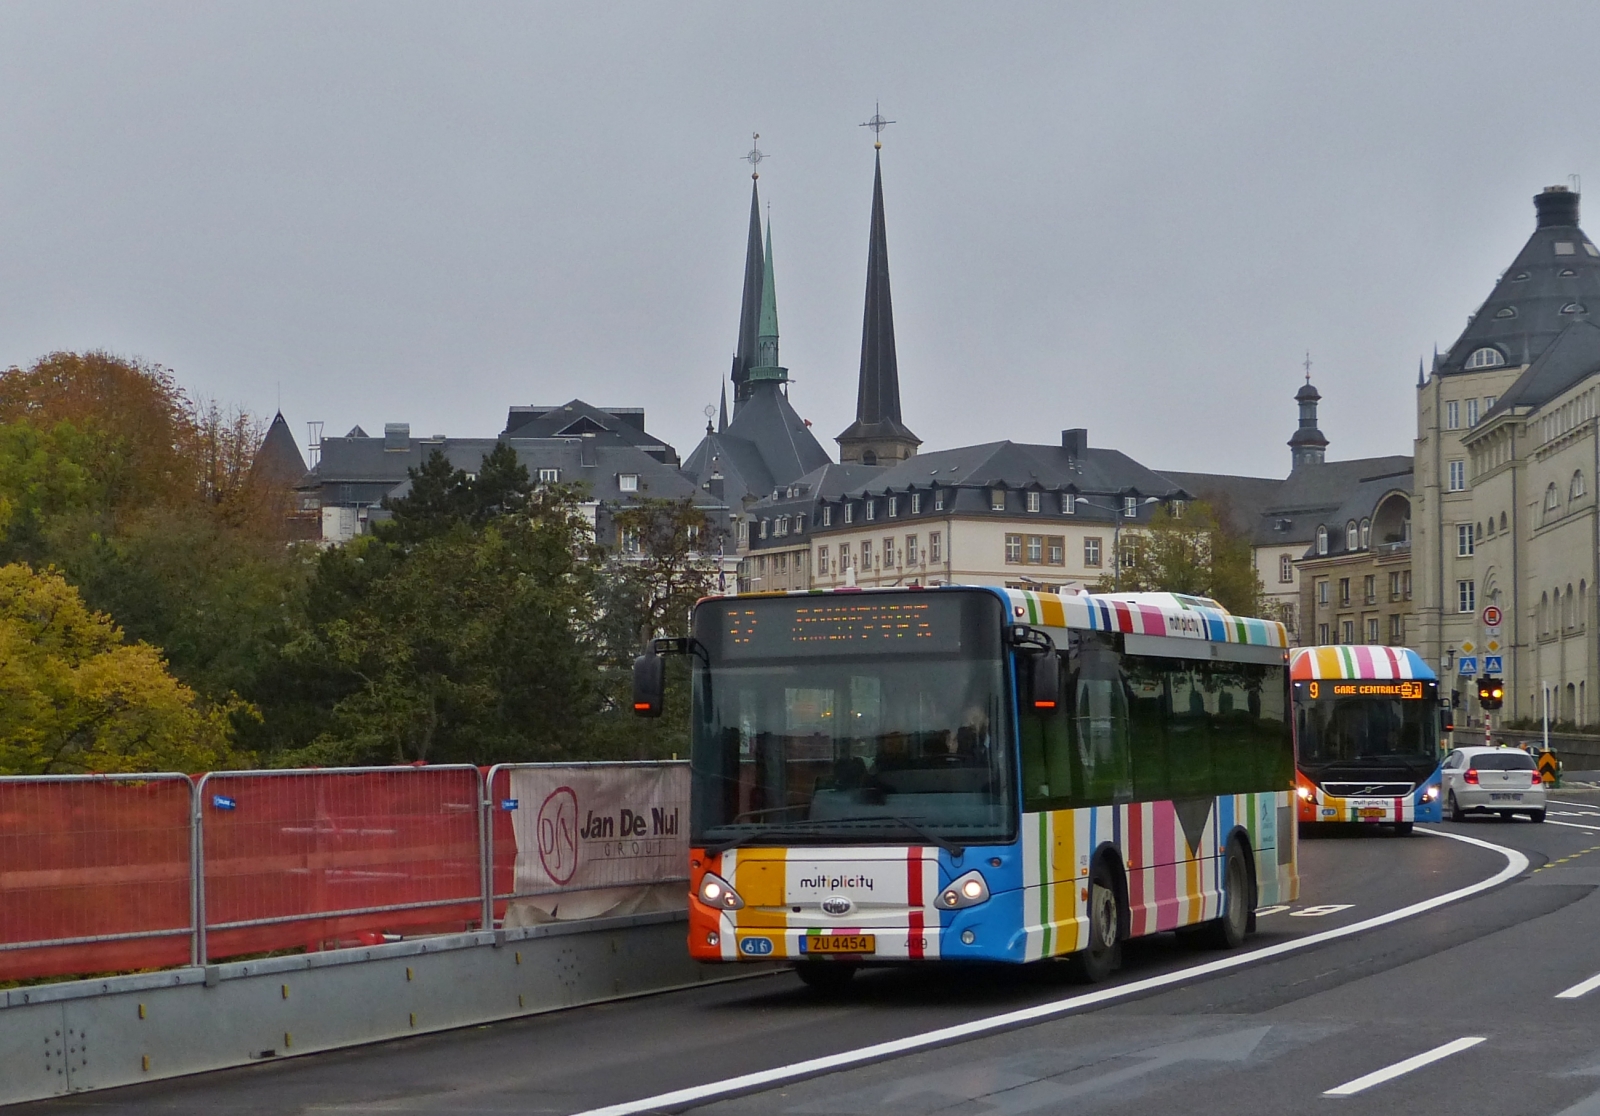 ZU 4454, Heuliez vom VDL, in den Straßen der Stadt Luxemburg unterwegs. 11.2019

